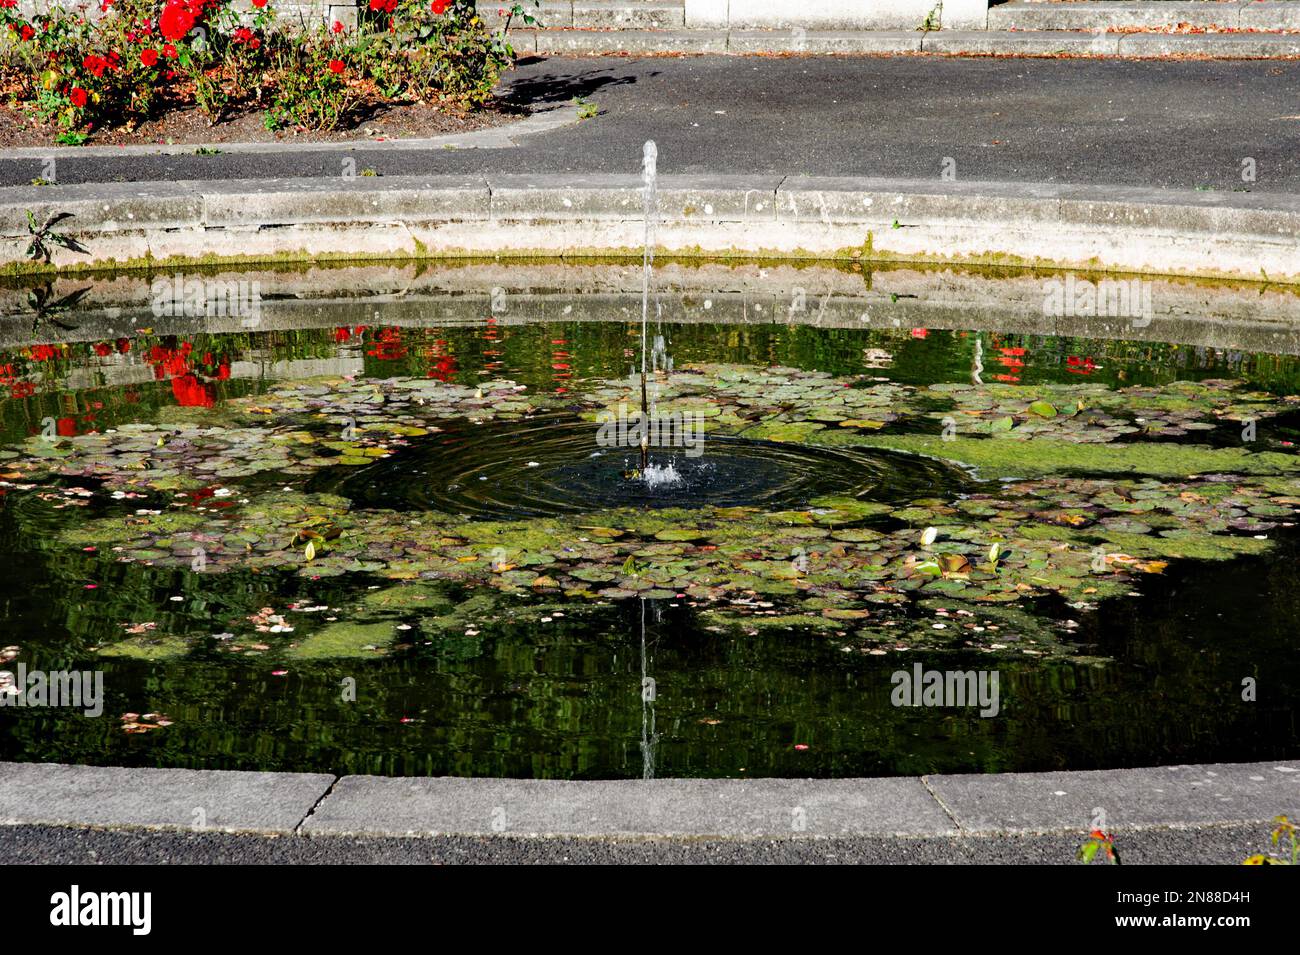 Fontana nel giardino di rose degli Irish War Memorial Gardens a Islandbridge, Dublino. Progettato da Sir Edwin Lutyens come memoriale del WW1, progettato nel 1930 Foto Stock